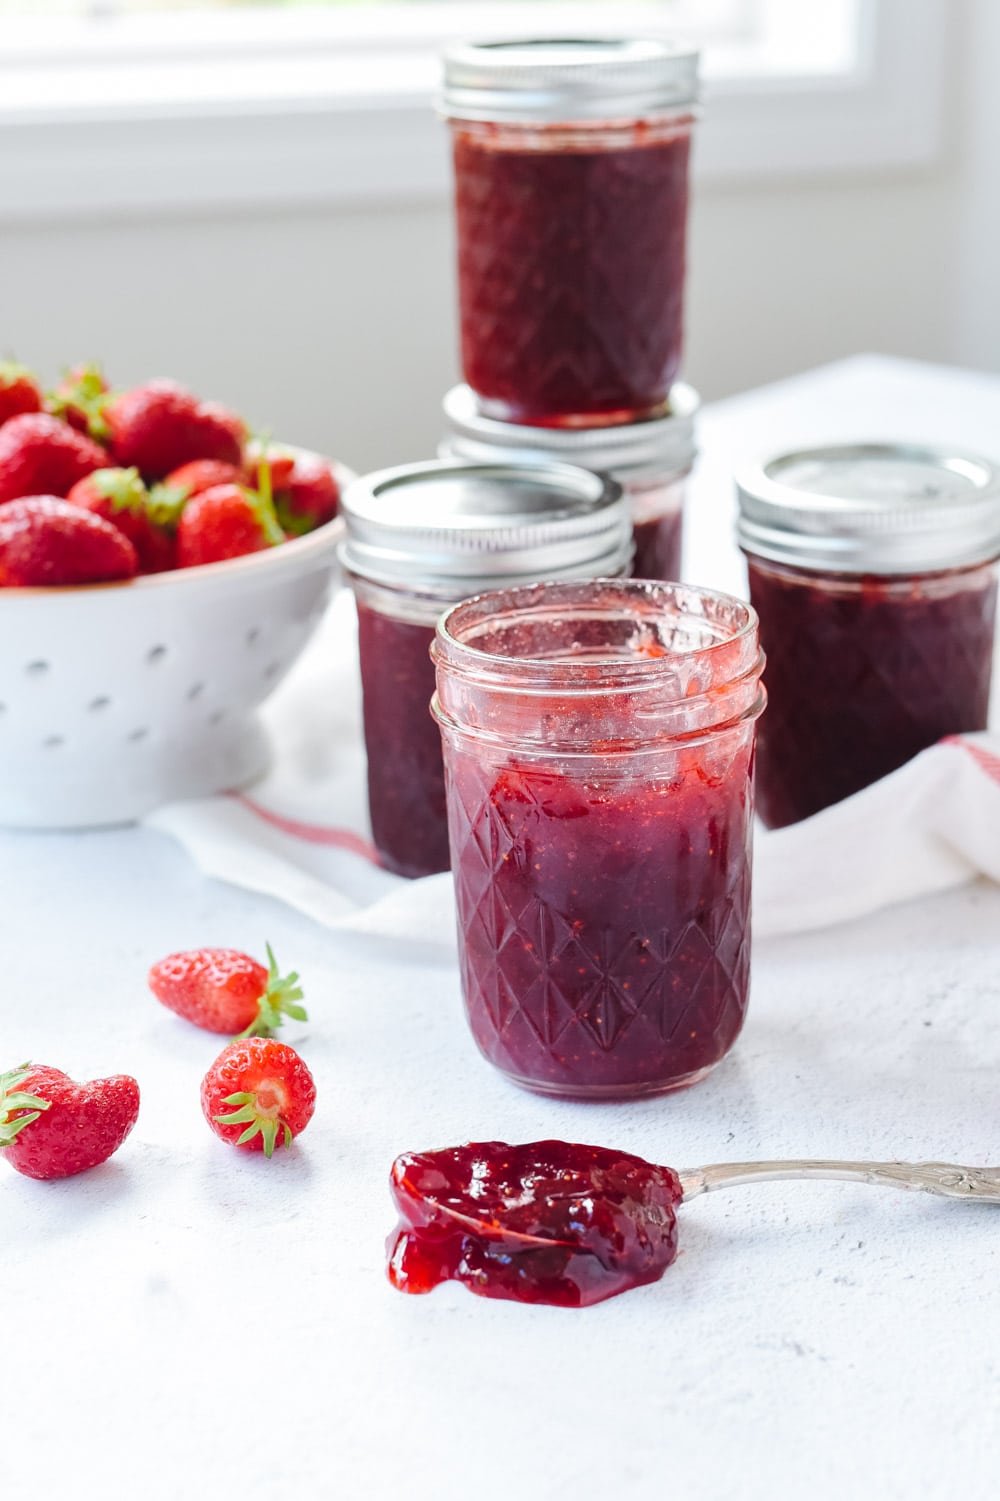 Strawberry jam without pectin